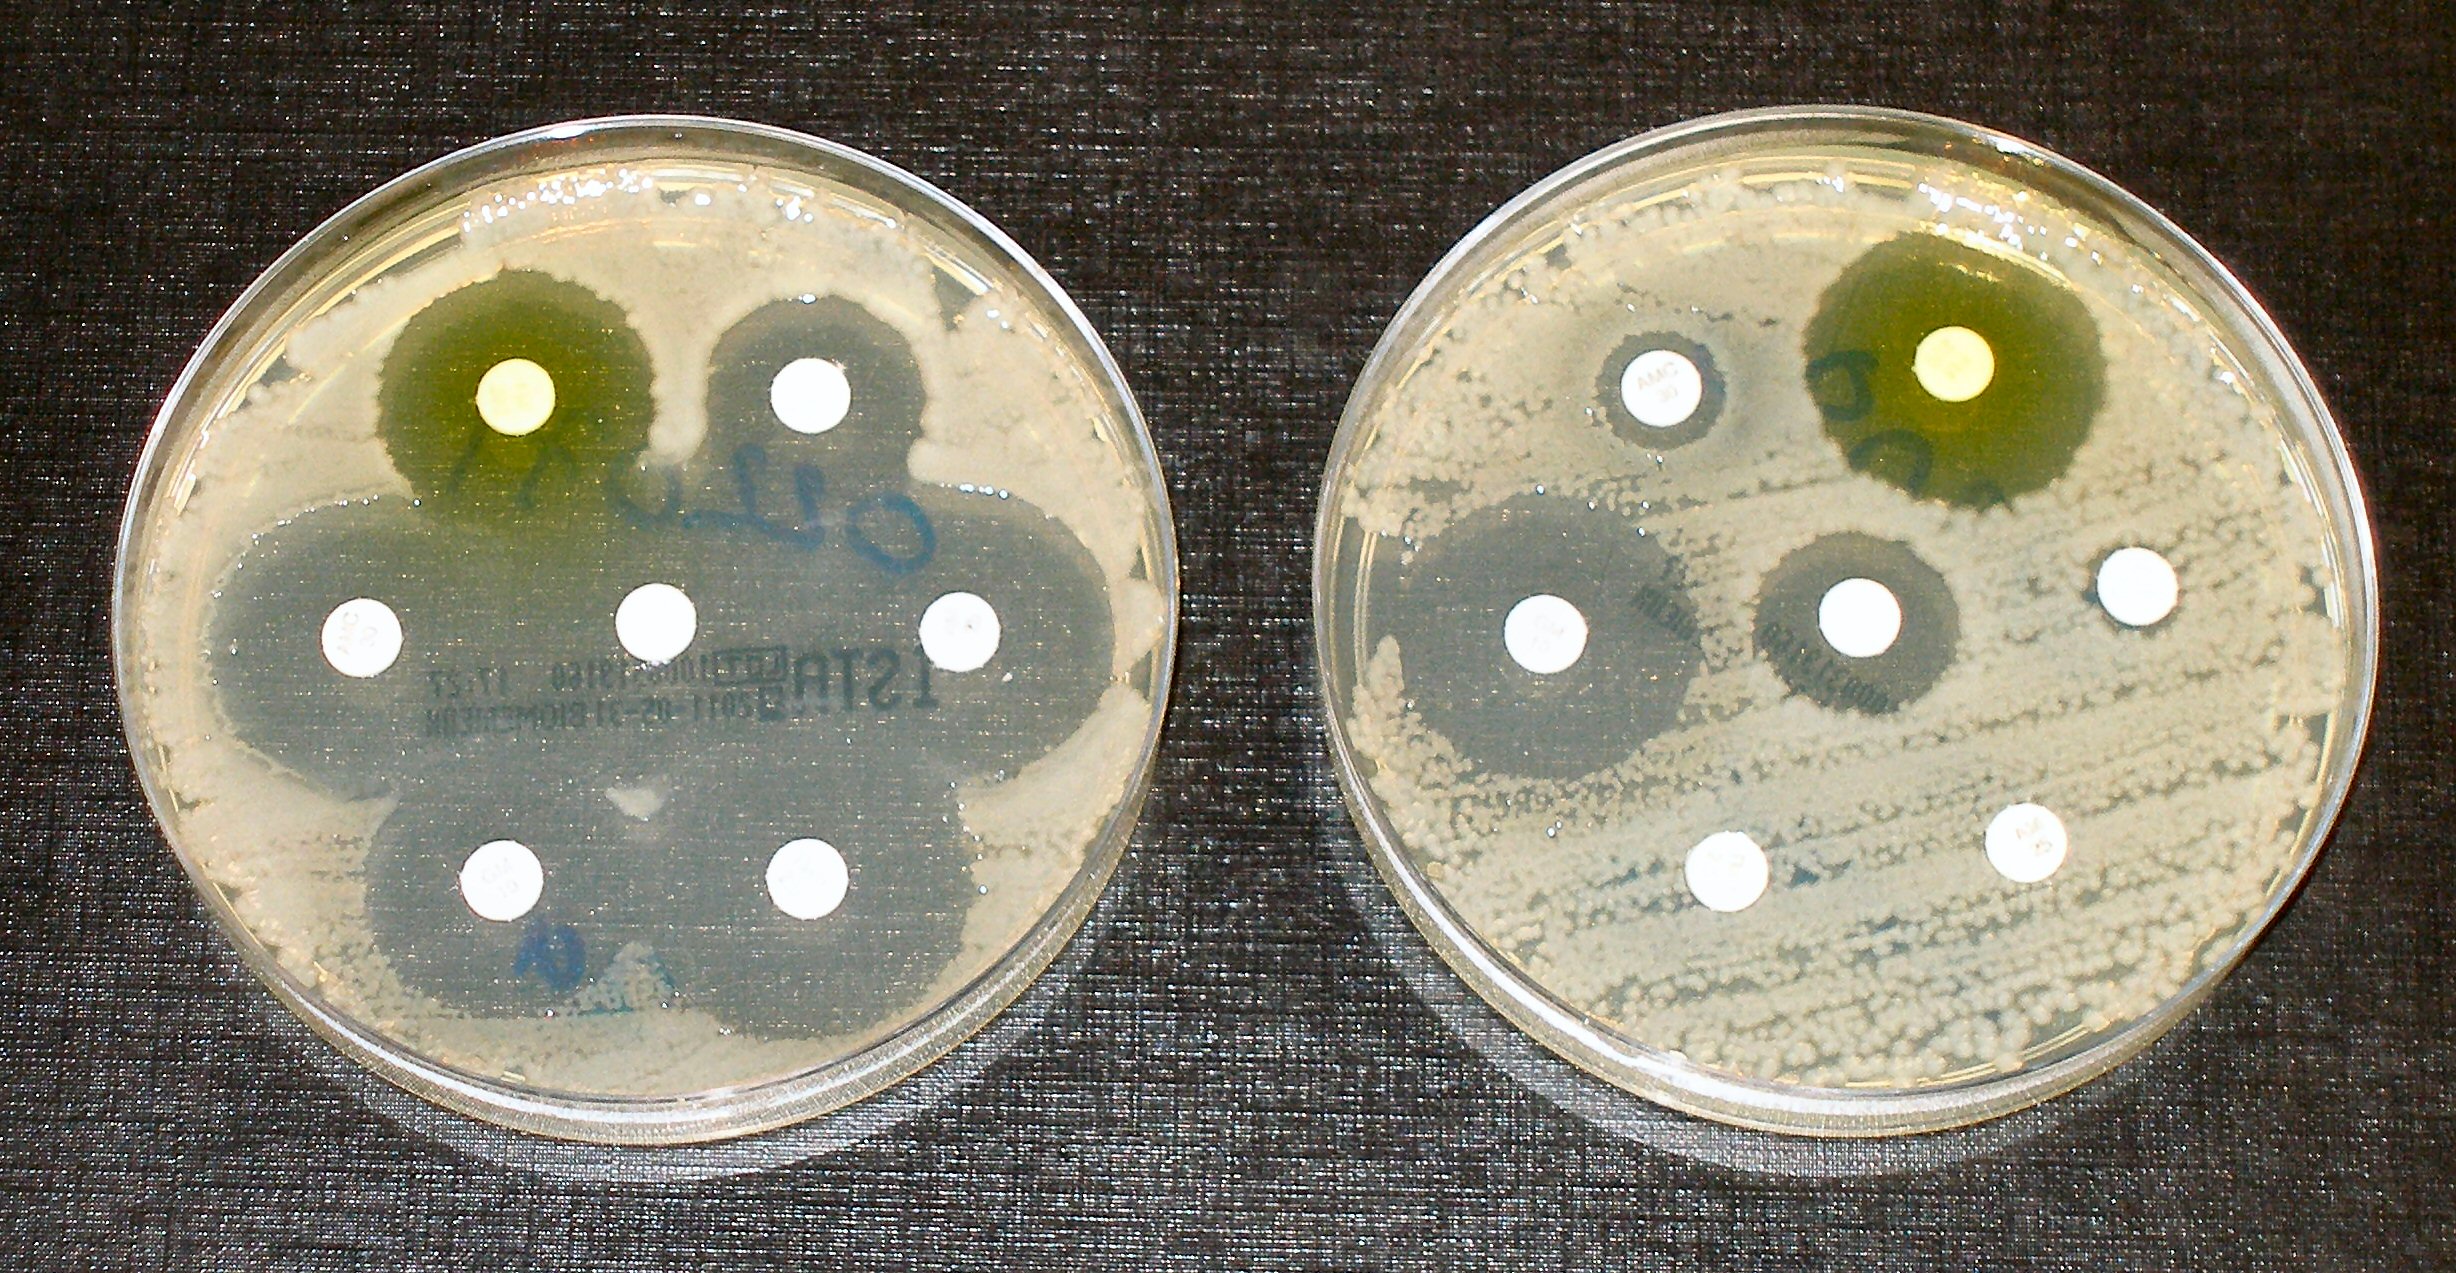  ¡Nueva publicación sobre prevalencia de resistencia antimicrobiana en gram negativos!